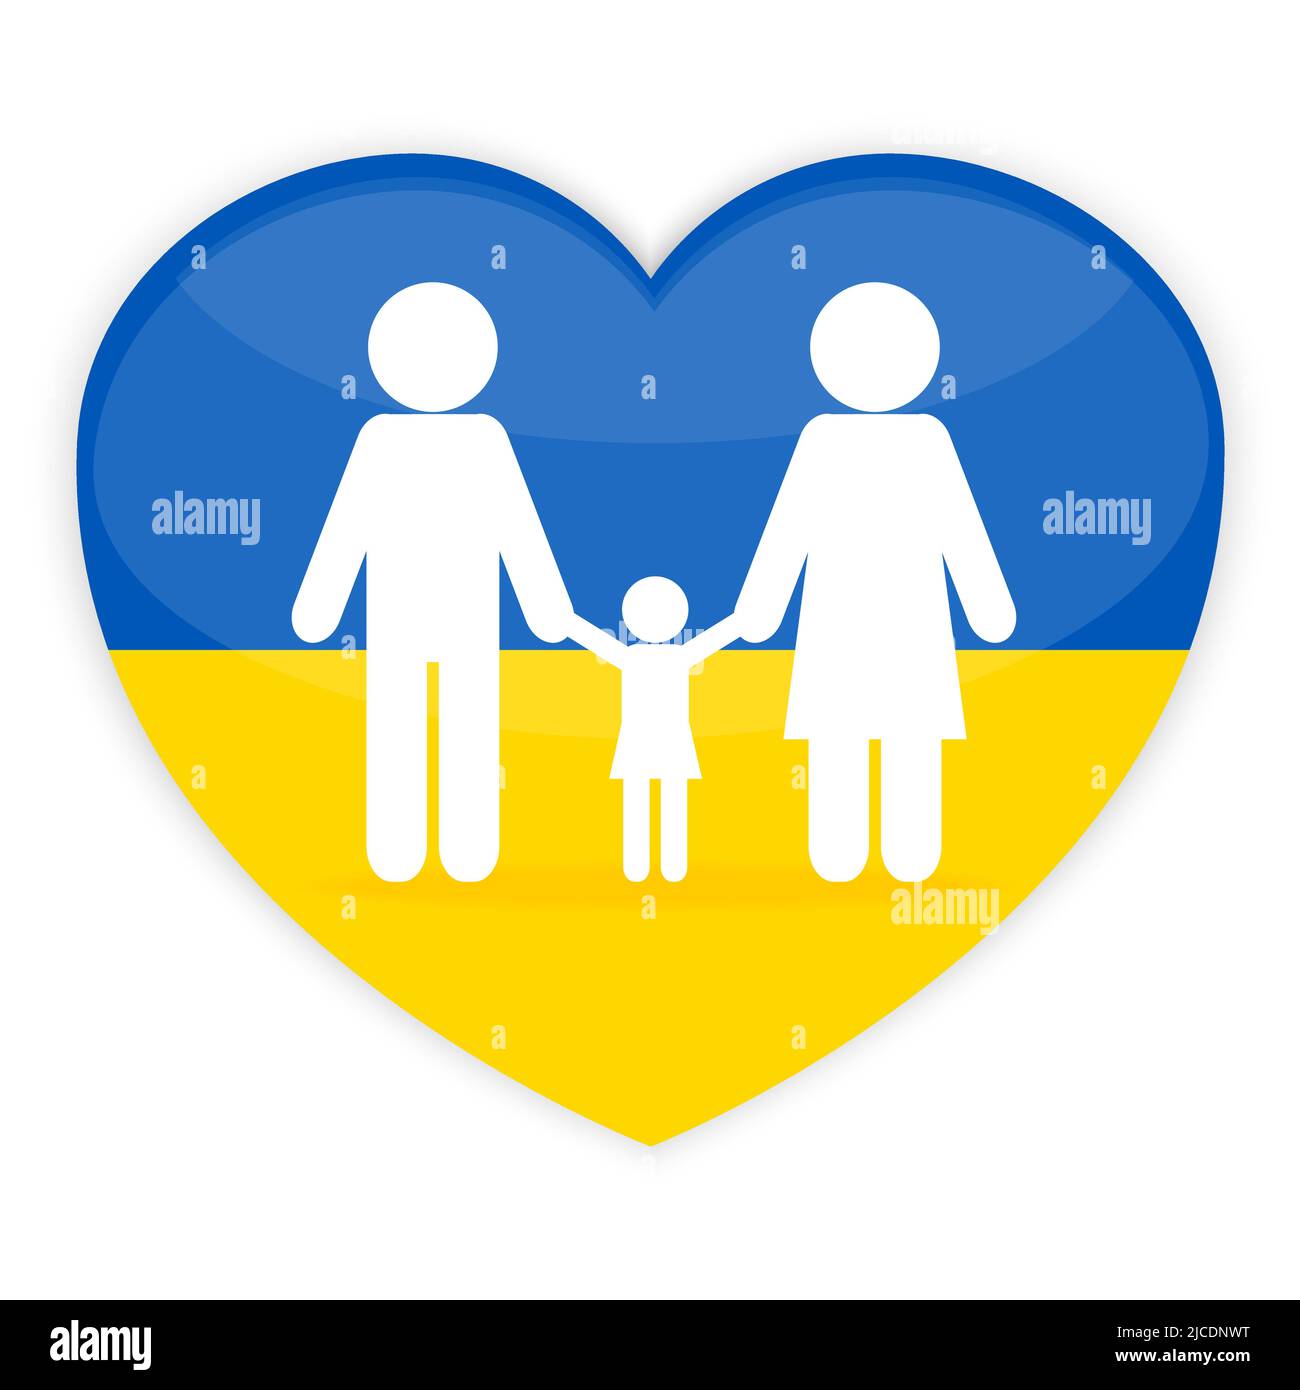 Famiglia con cuore. Icona di colore blu e giallo, i colori della bandiera nazionale dell'Ucraina. Illustrazione vettoriale Illustrazione Vettoriale